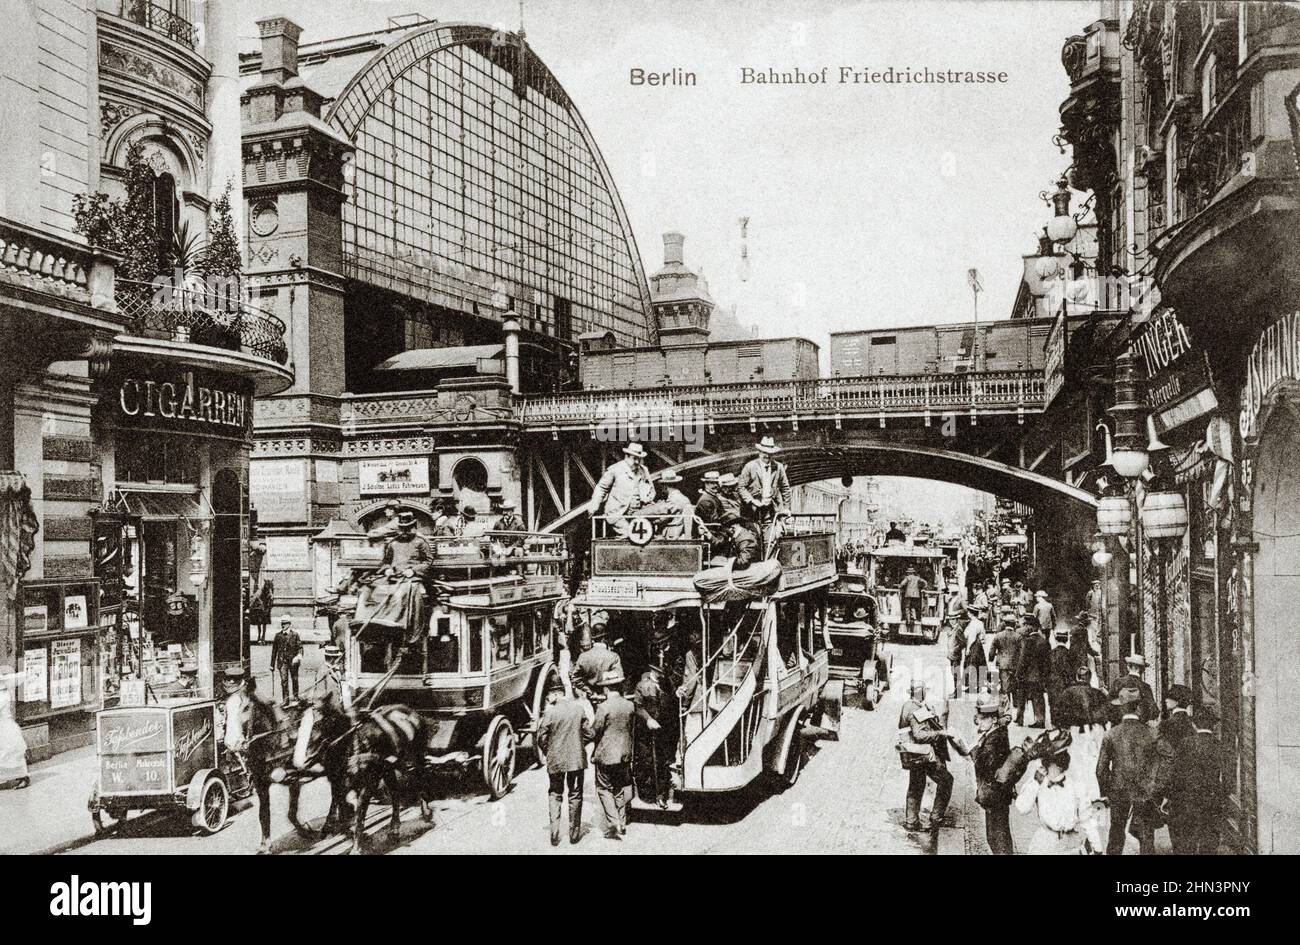 Carte postale ancienne de Bahnhof Berlin Friedrichstraße (gare de Berlin Friedrichstrasse). Début du 20th siècle Banque D'Images